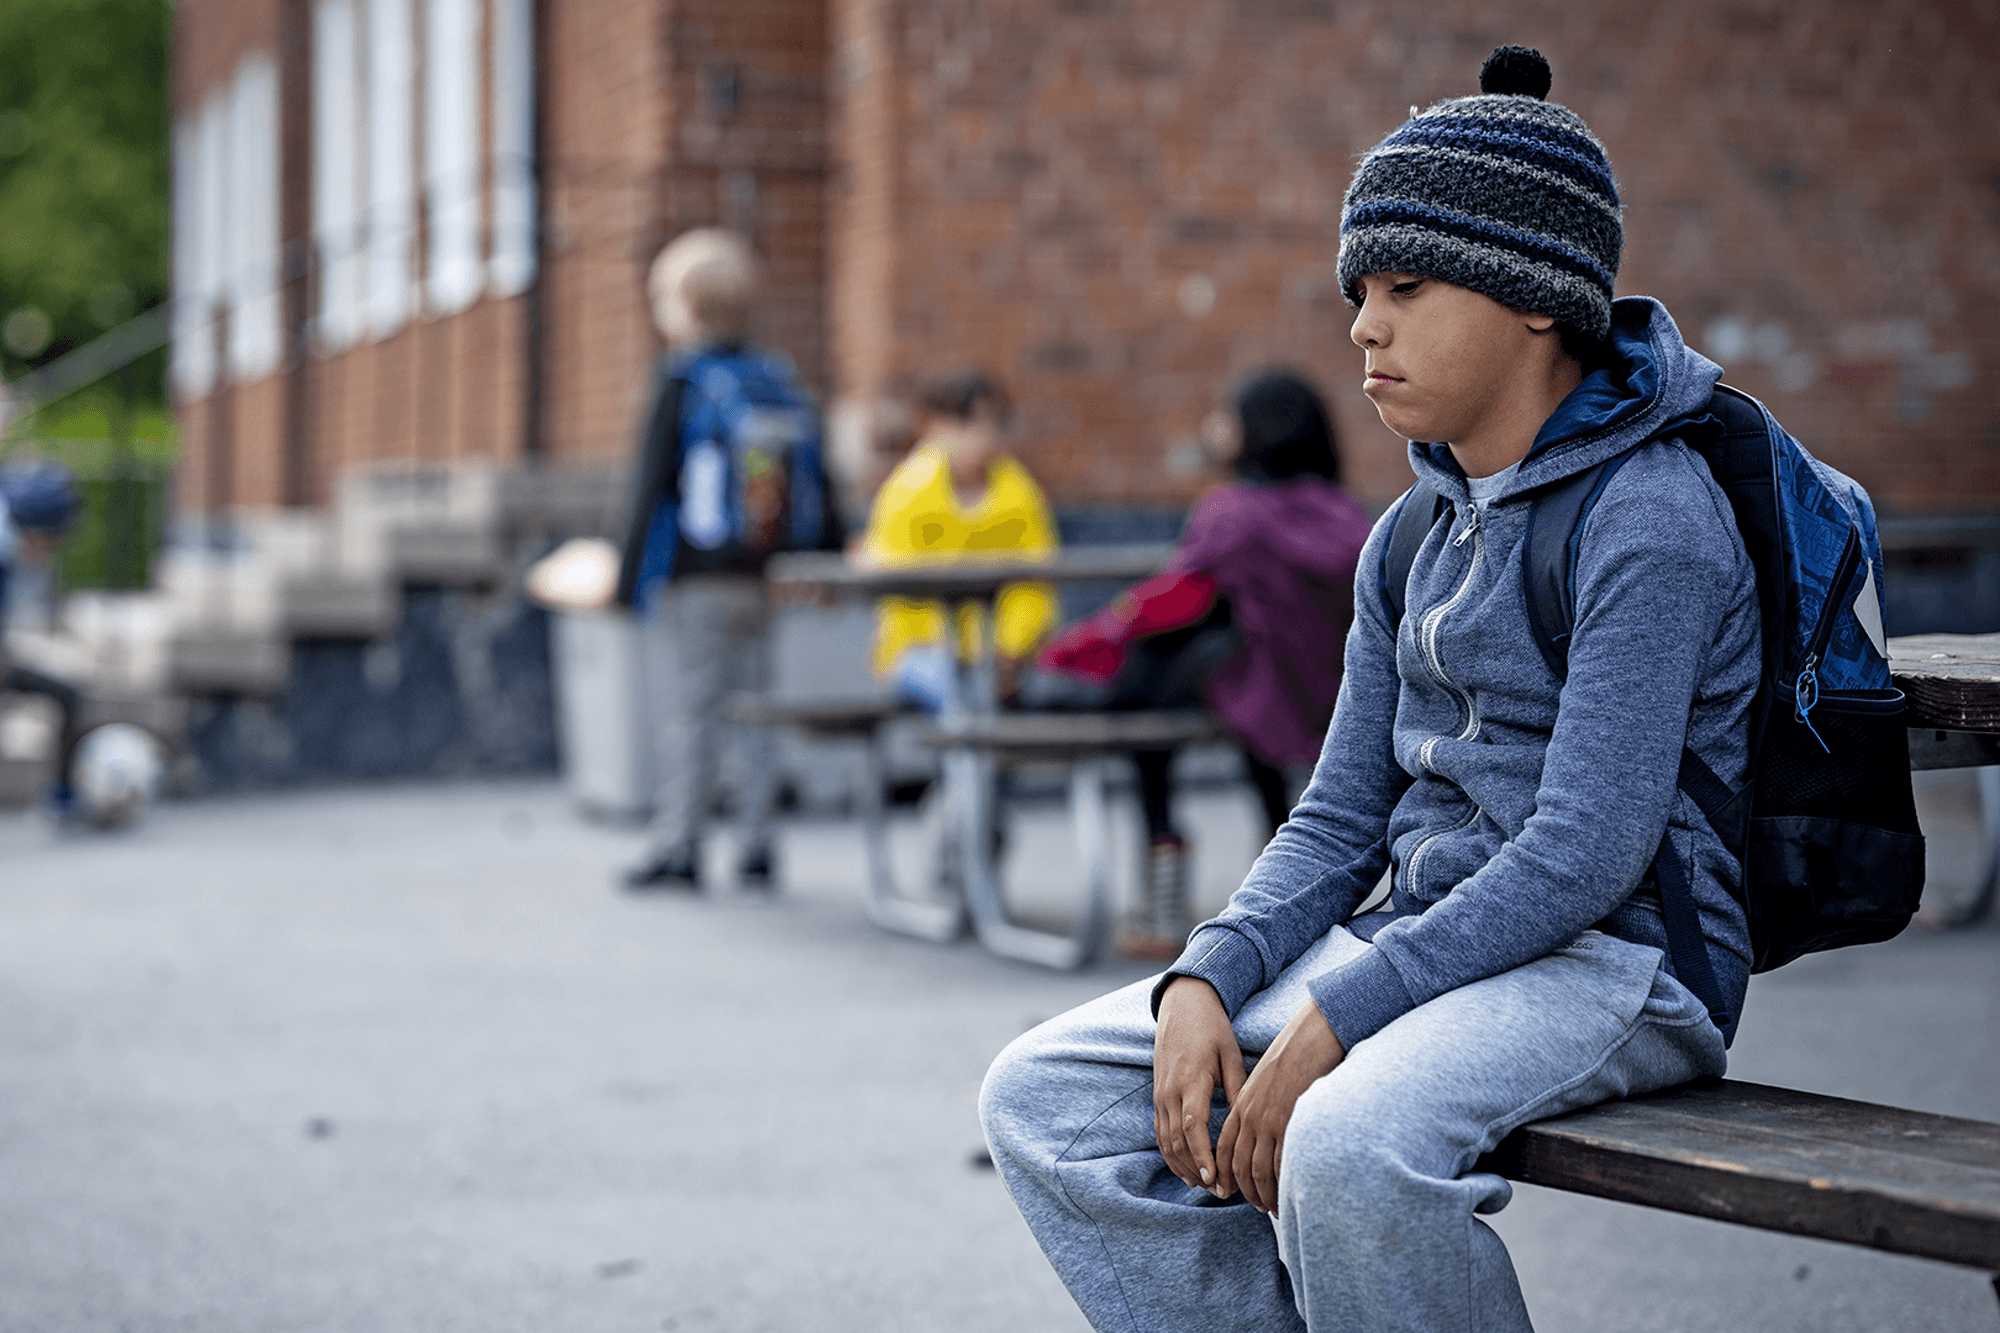 En pojke med ryggsäck sitter på en bänk på en skolgård och ser uppgiven ut. Man ser andra barn i bakgrunden.